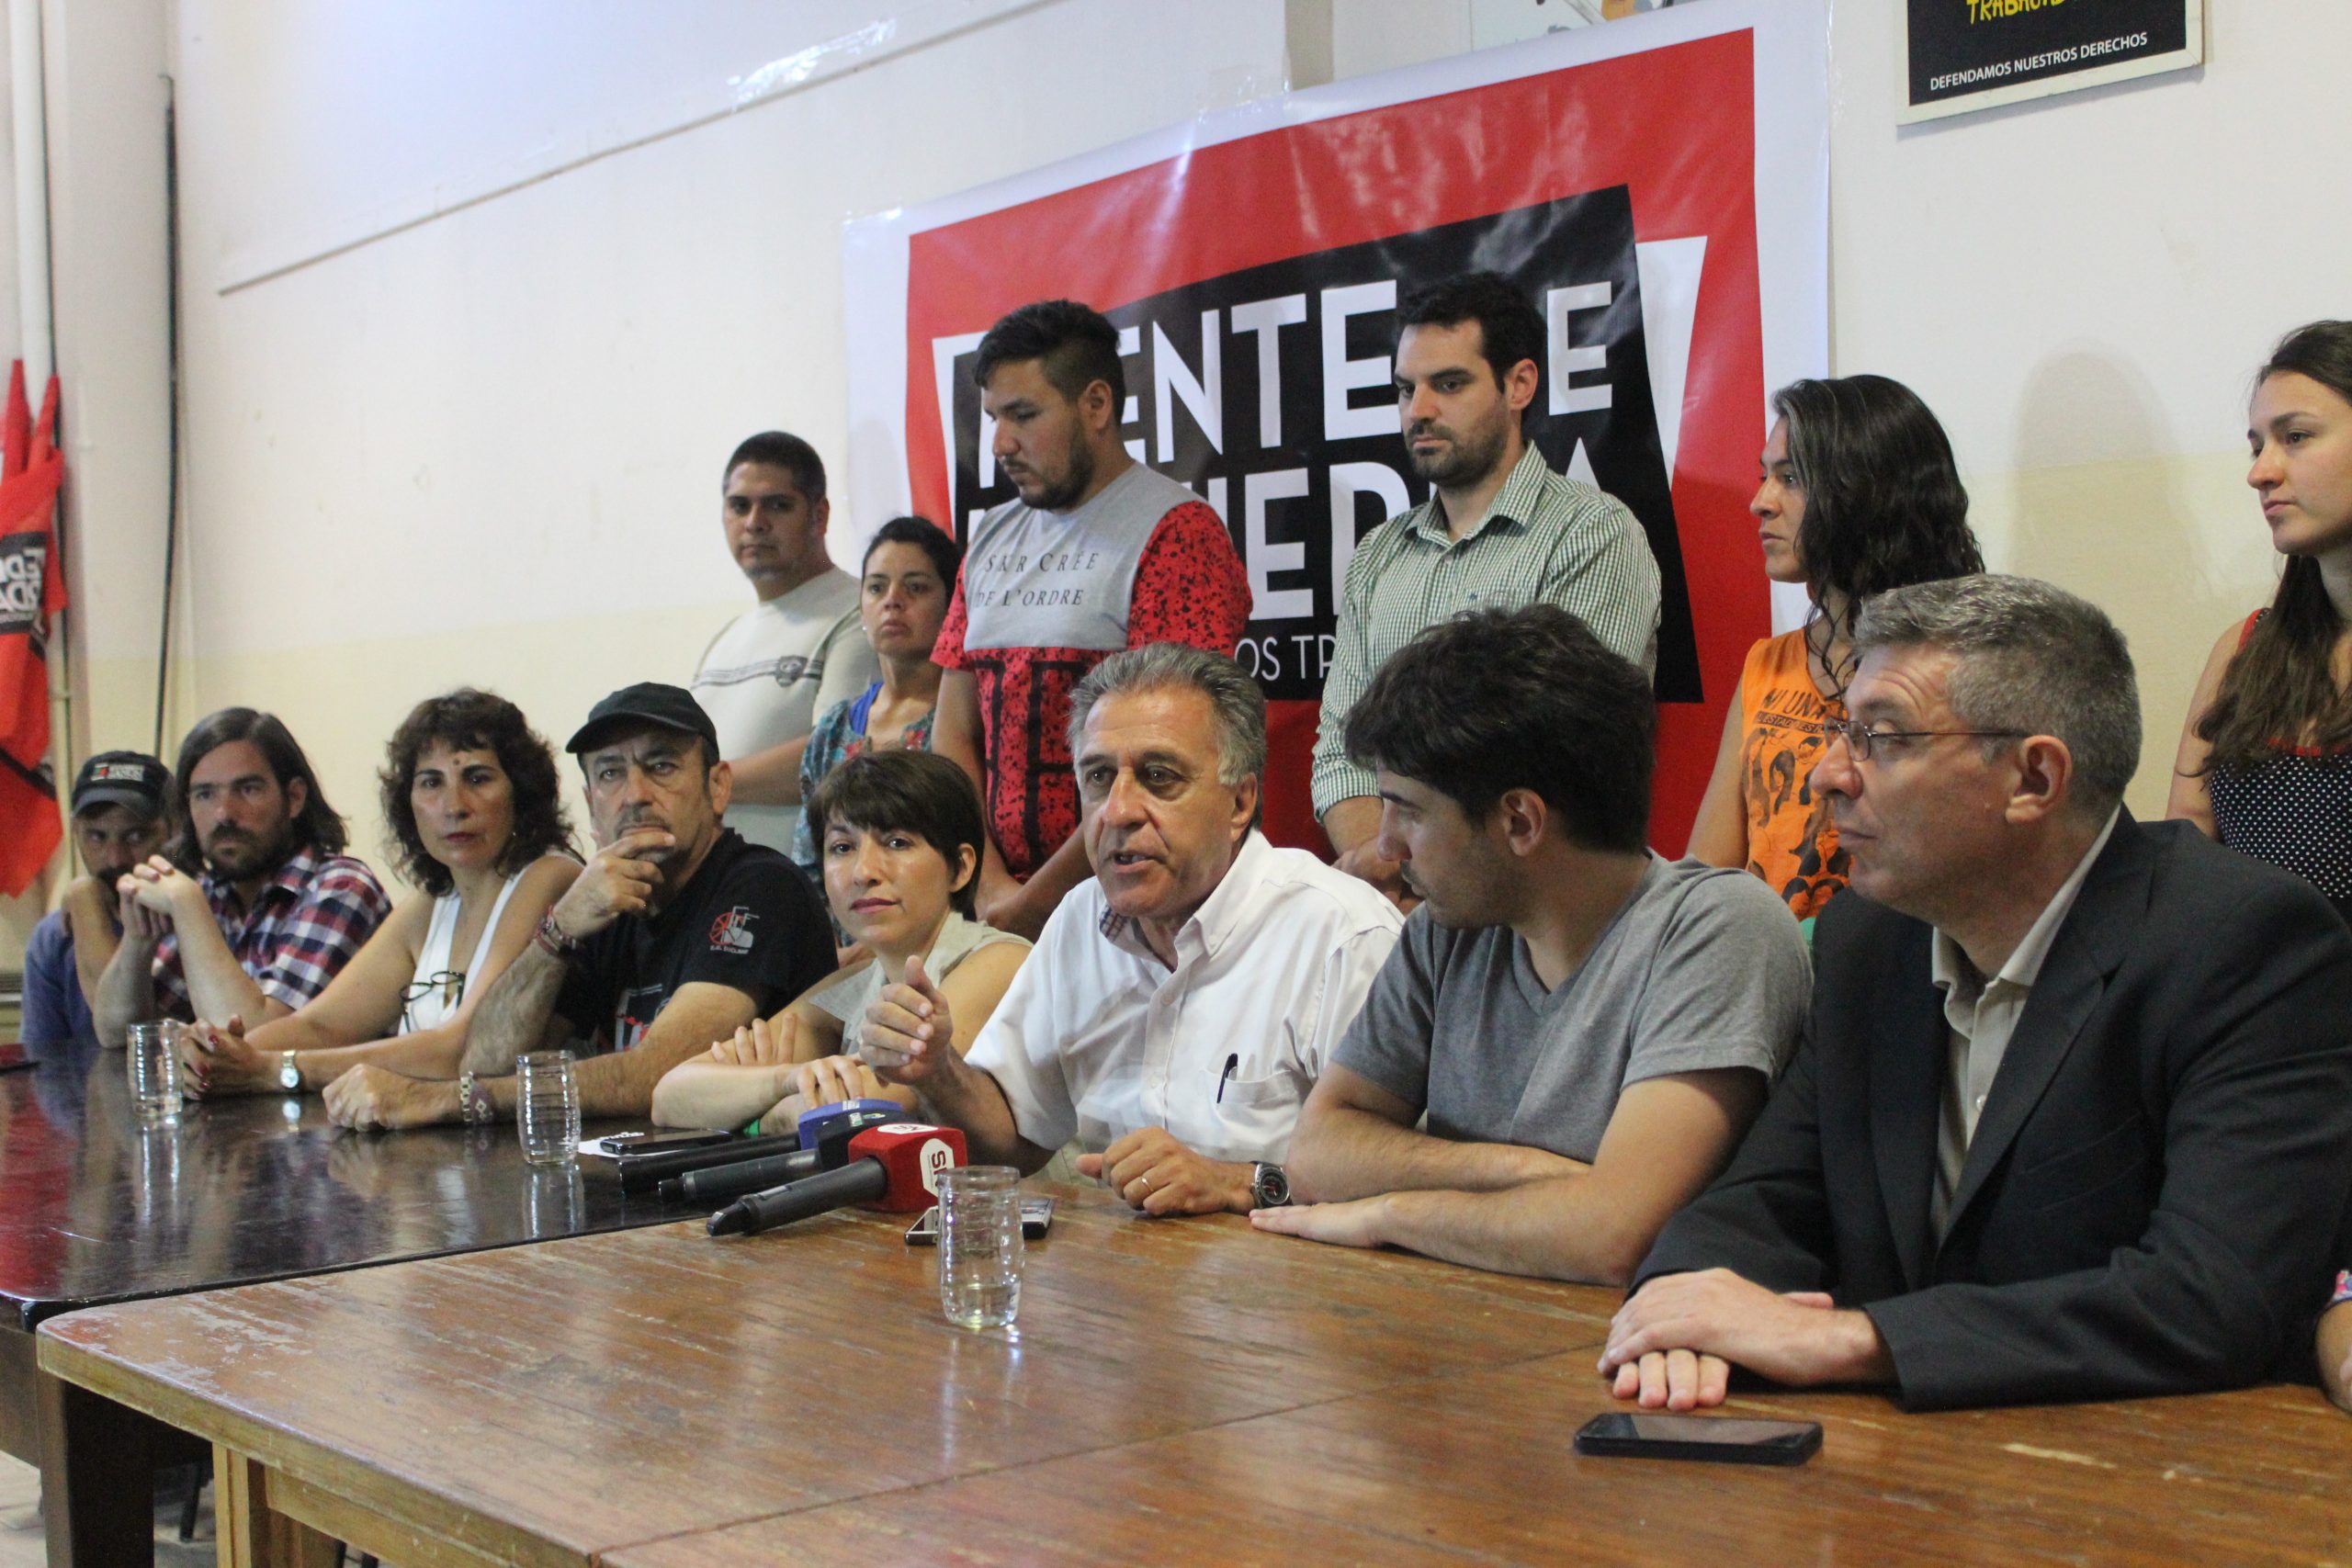 Pitrola en Neuquén: “Urge la propuesta nacional del FIT para enfrentar al régimen del FMI y los monopolios petroleros”